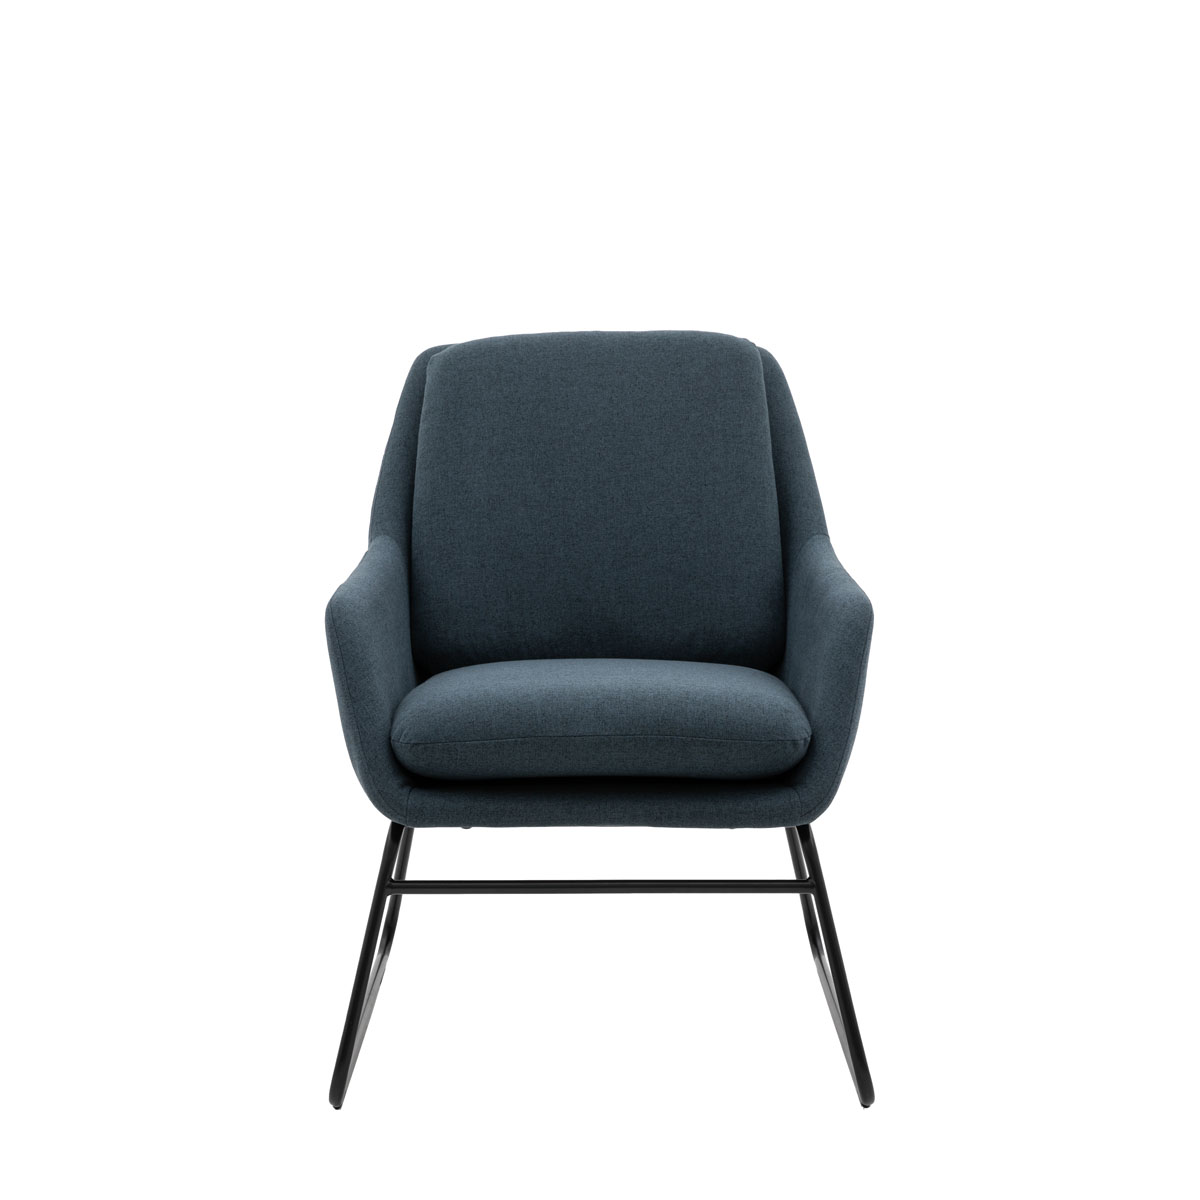 Funton Chair Midnight 635x885x835mm